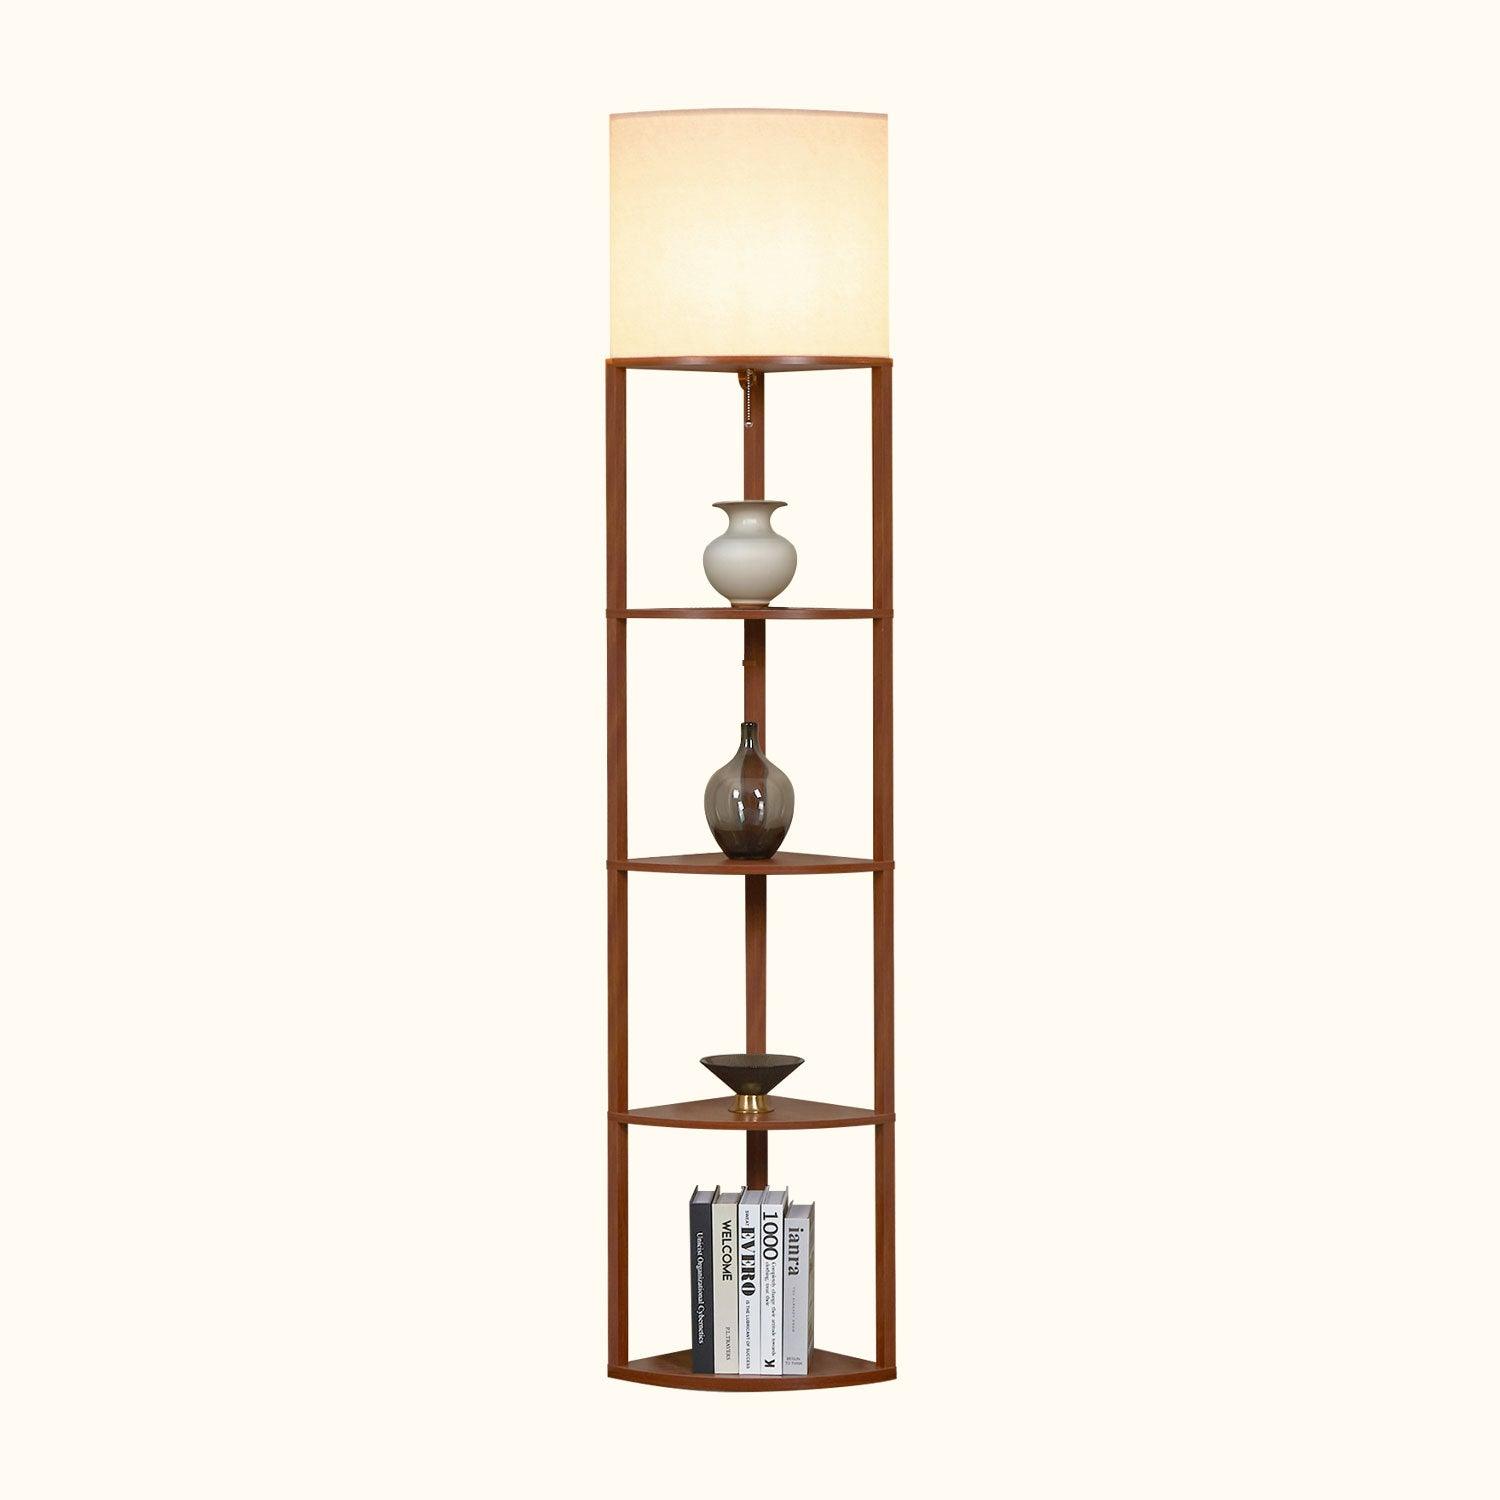 ATAMIN Alvis Edge - 72" Corner Floor Lamp with Shelves